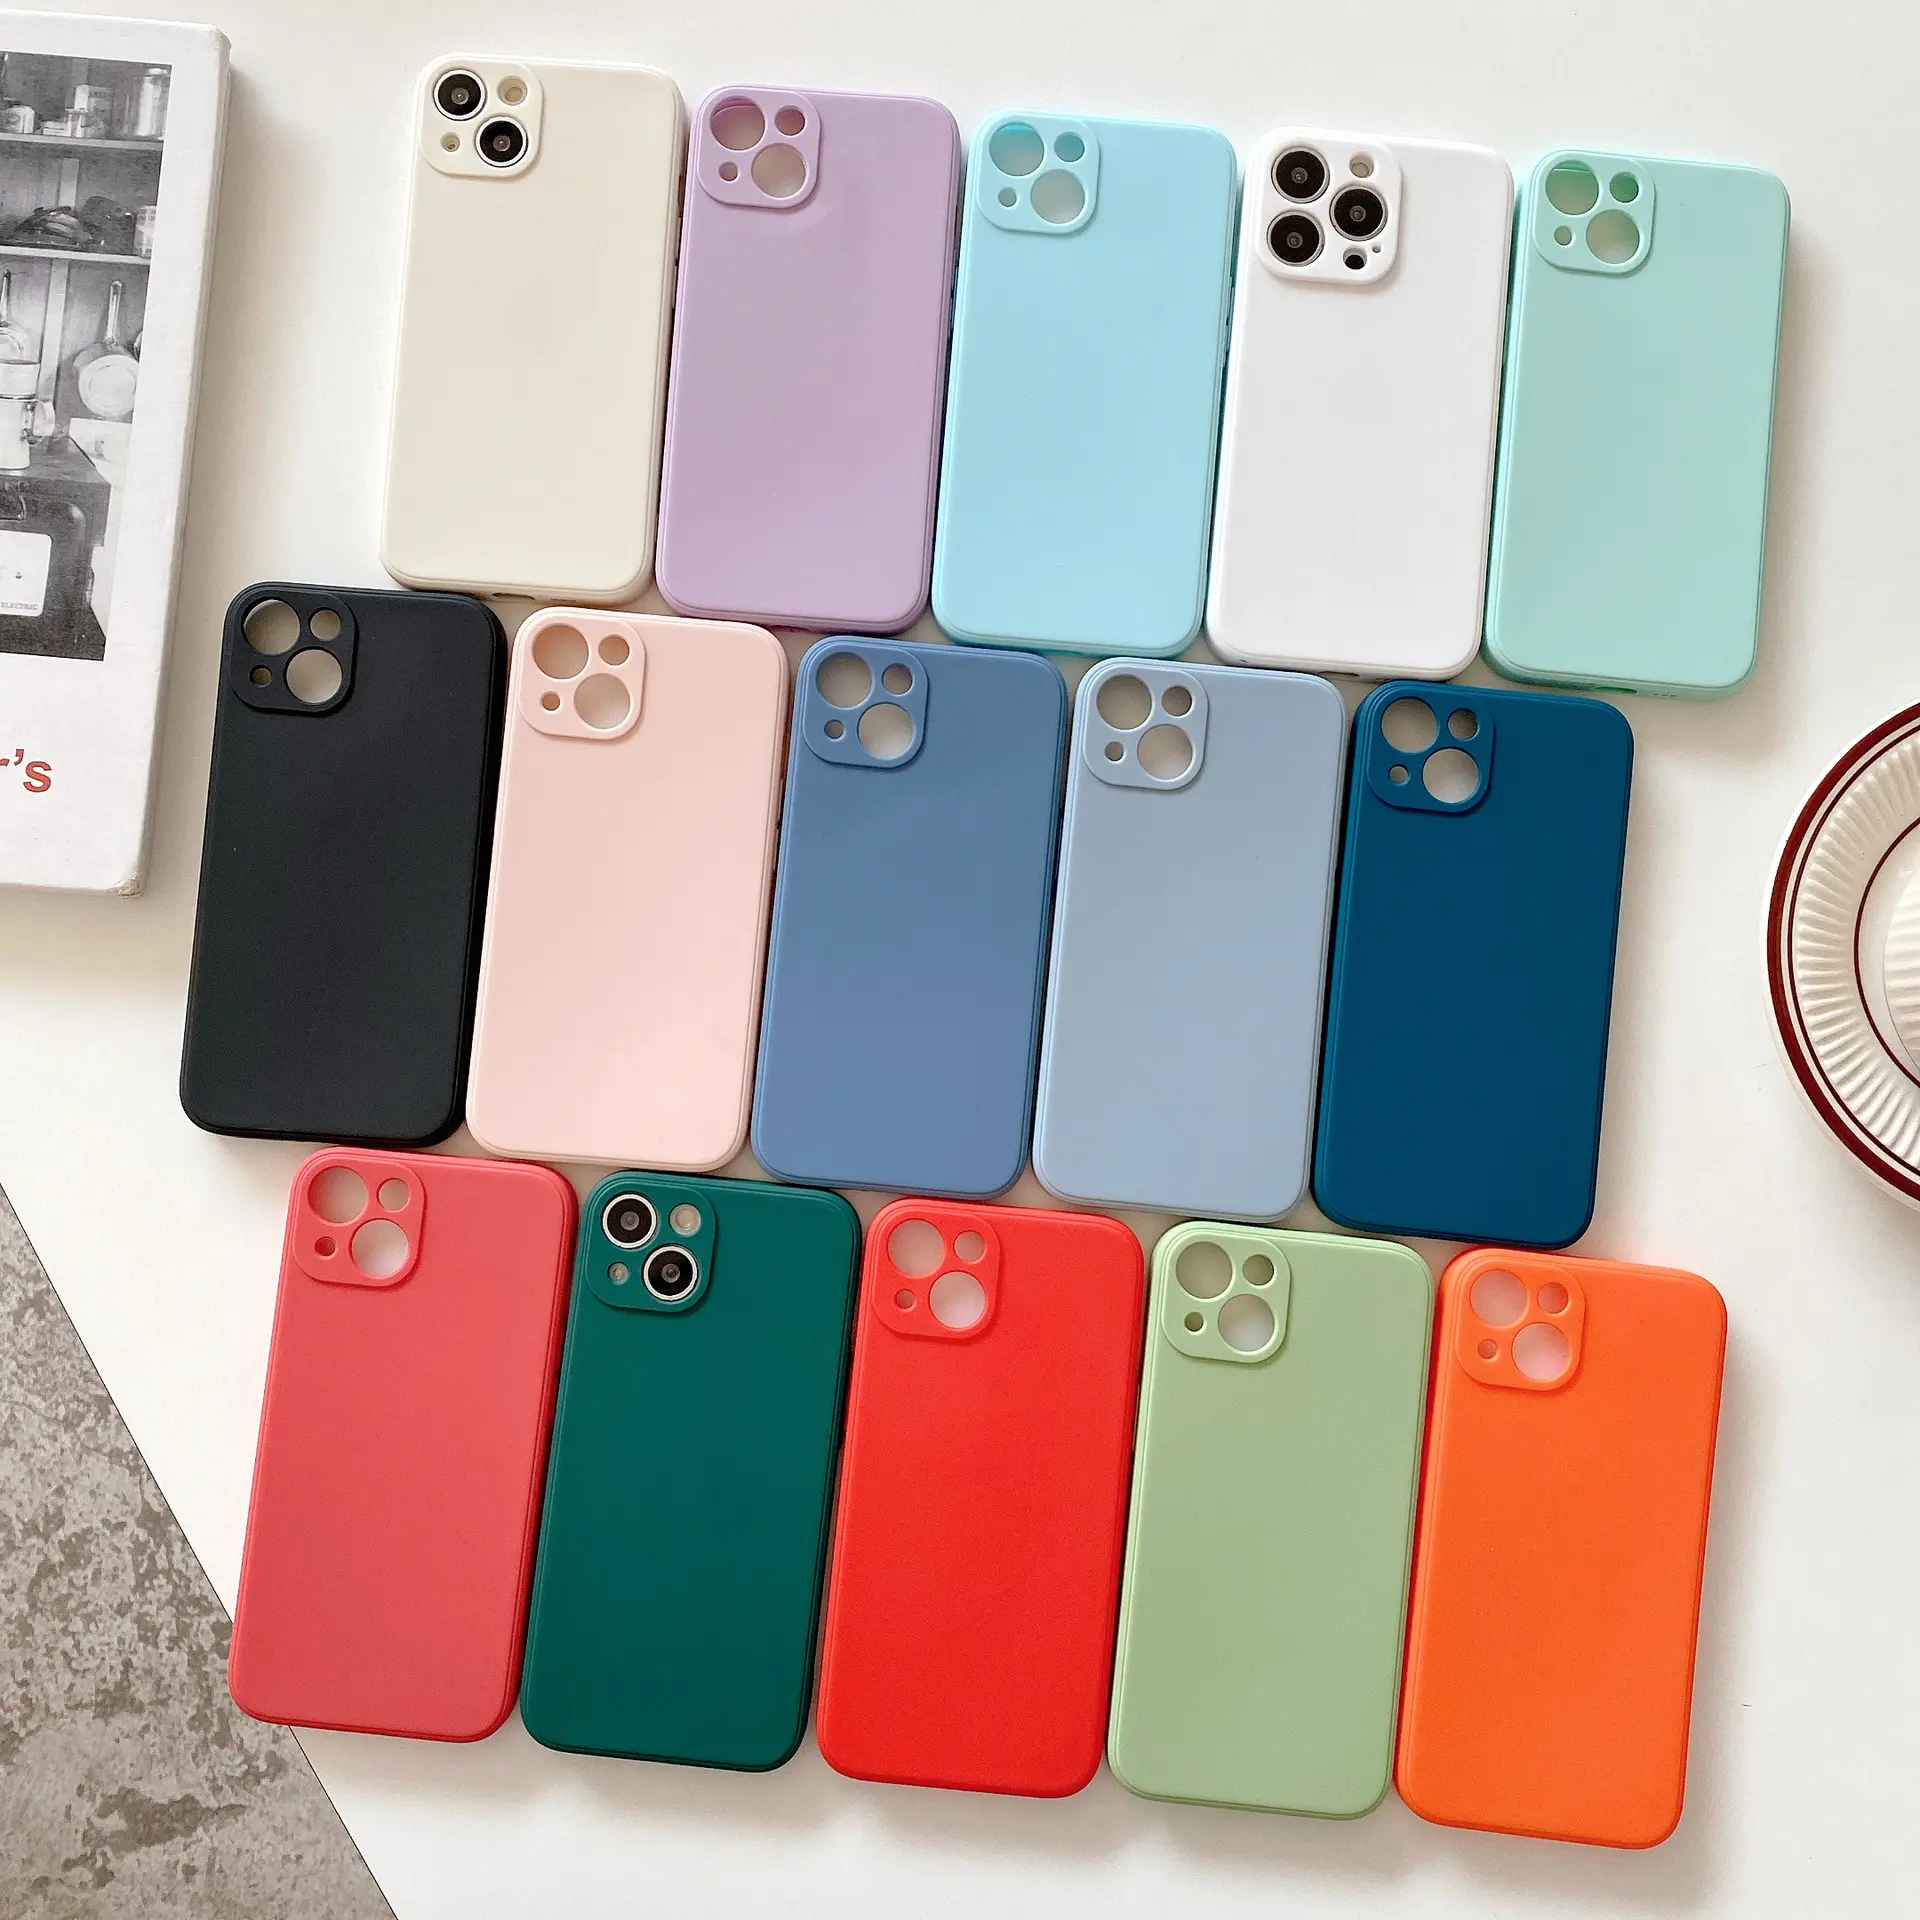 Kauçuk darbeye dayanıklı cep telefonu kapağı renkli buzlu yumuşak kauçuk yumuşak TPU Iphone 12 13 Pro Max ODM ve OEM mükemmel uyum